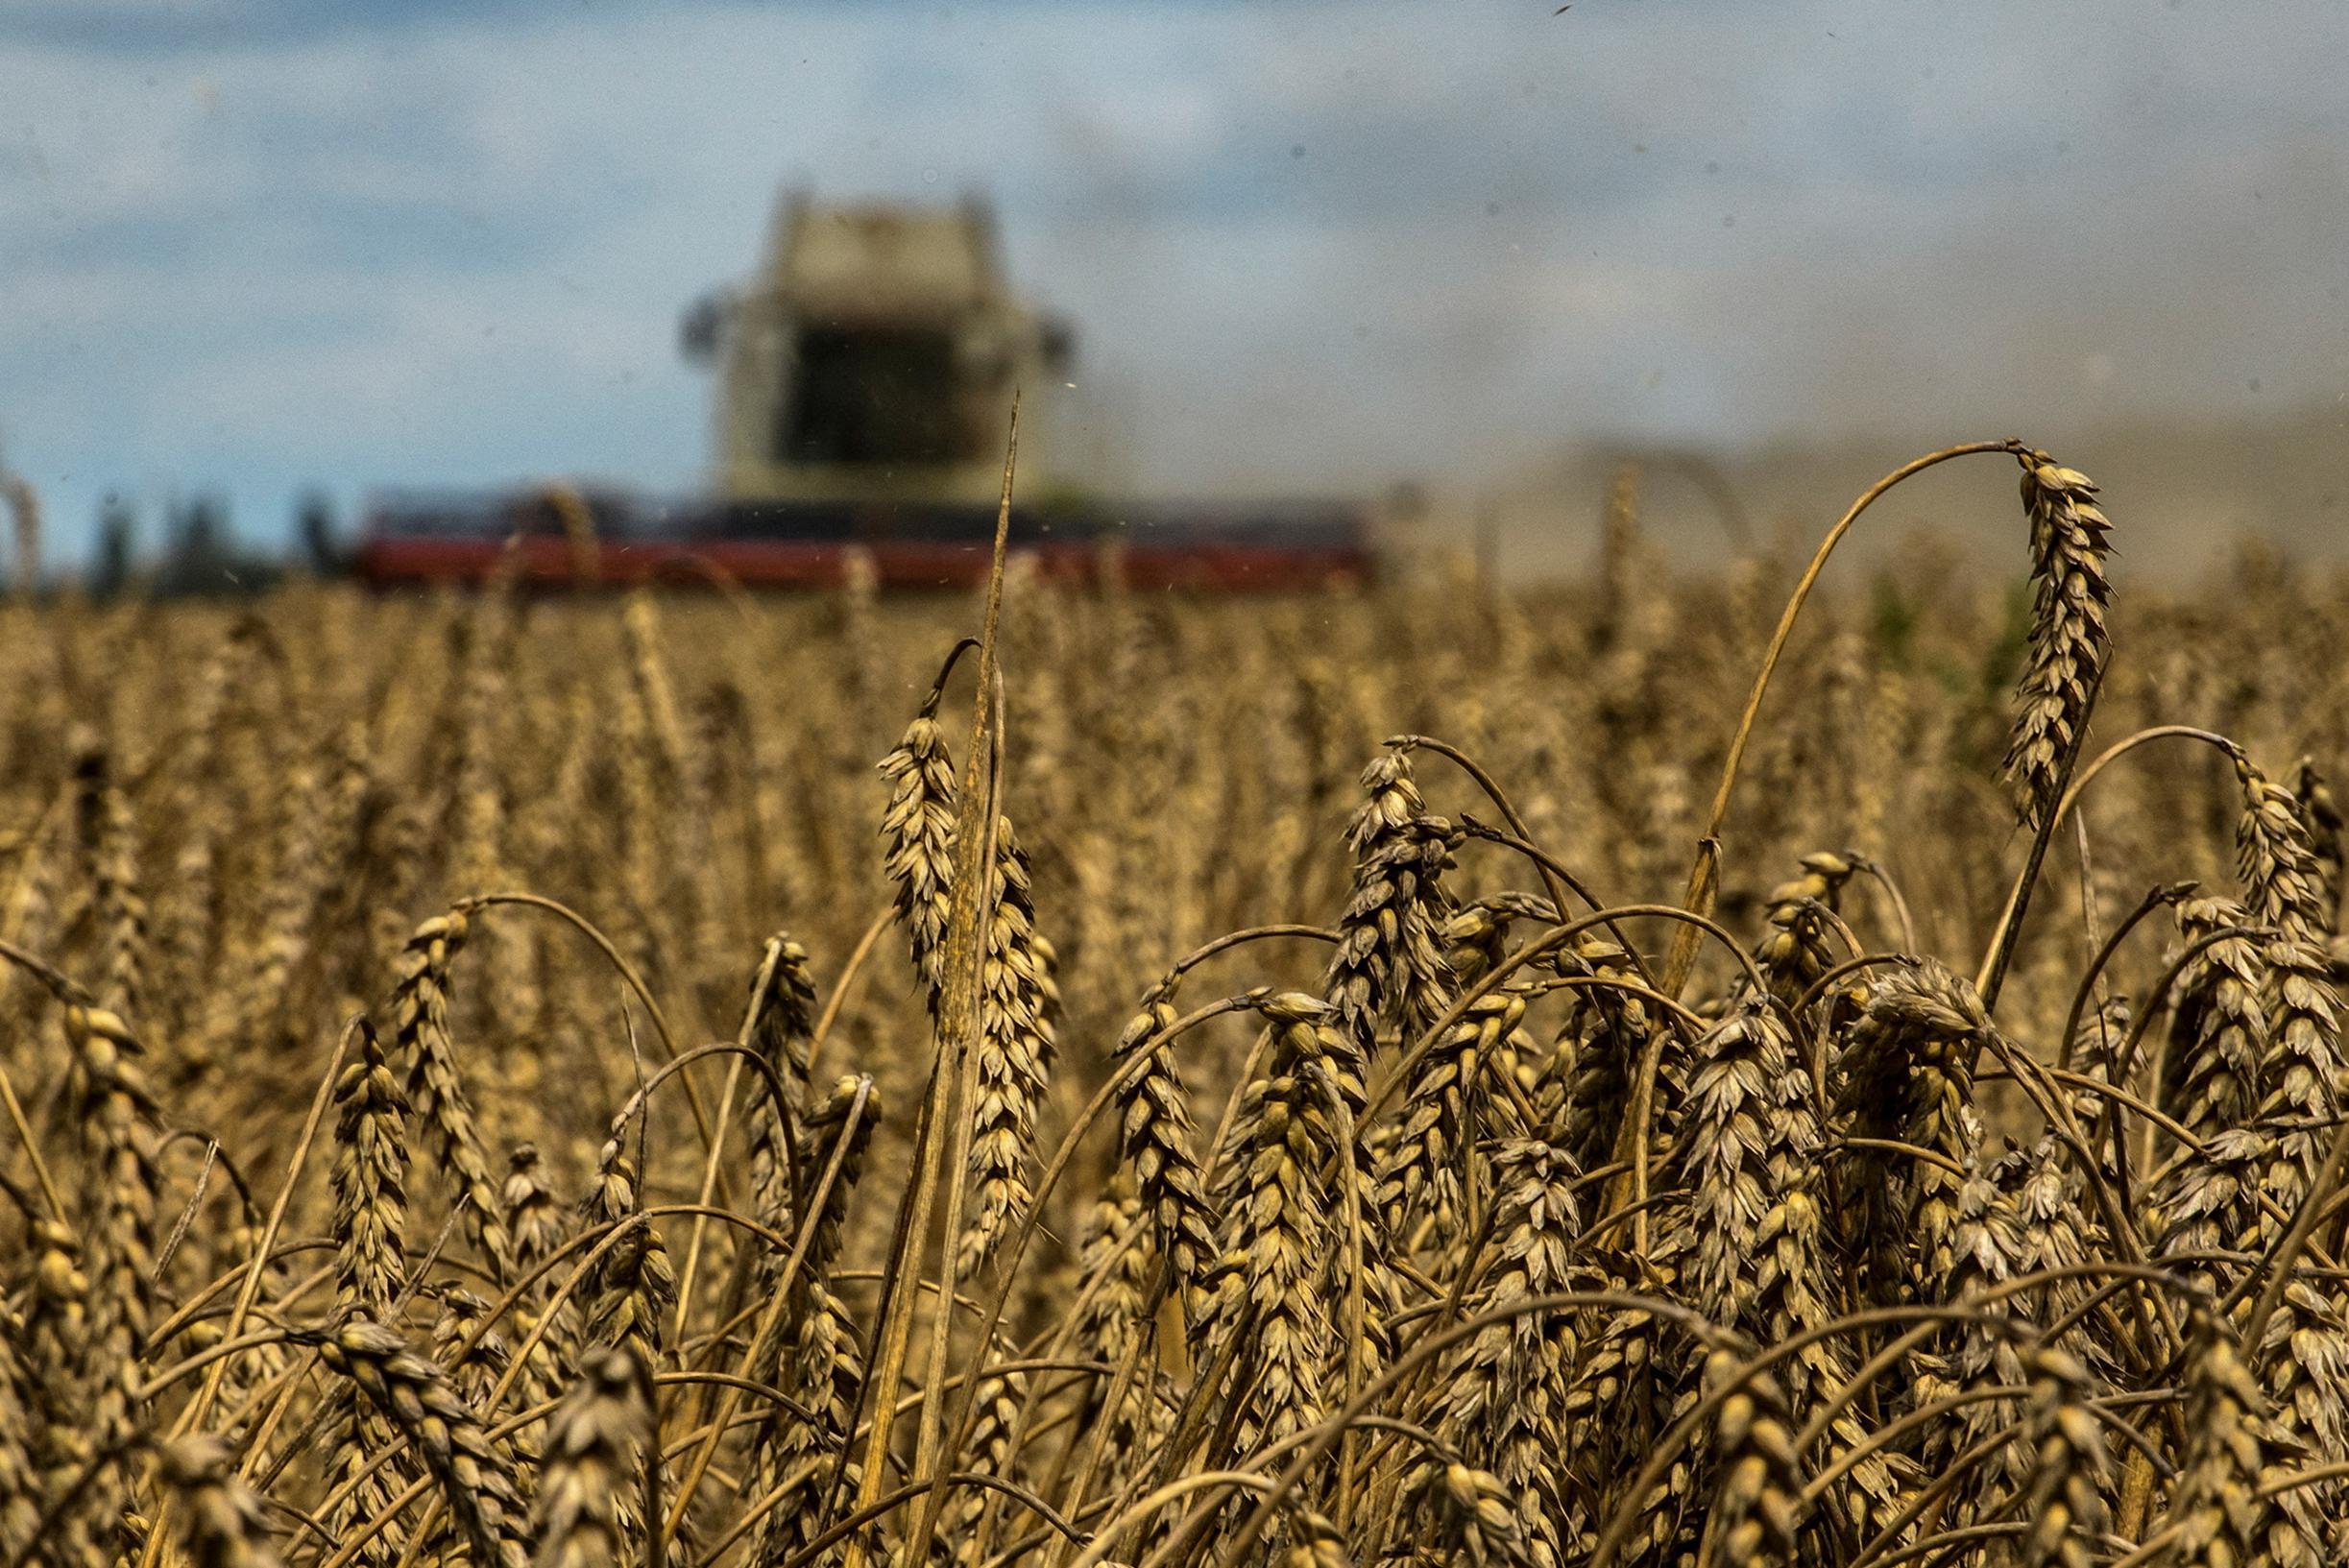 Цены на зерно падают из-за экспорта из Украины, но «ситуация пока не стабильна»